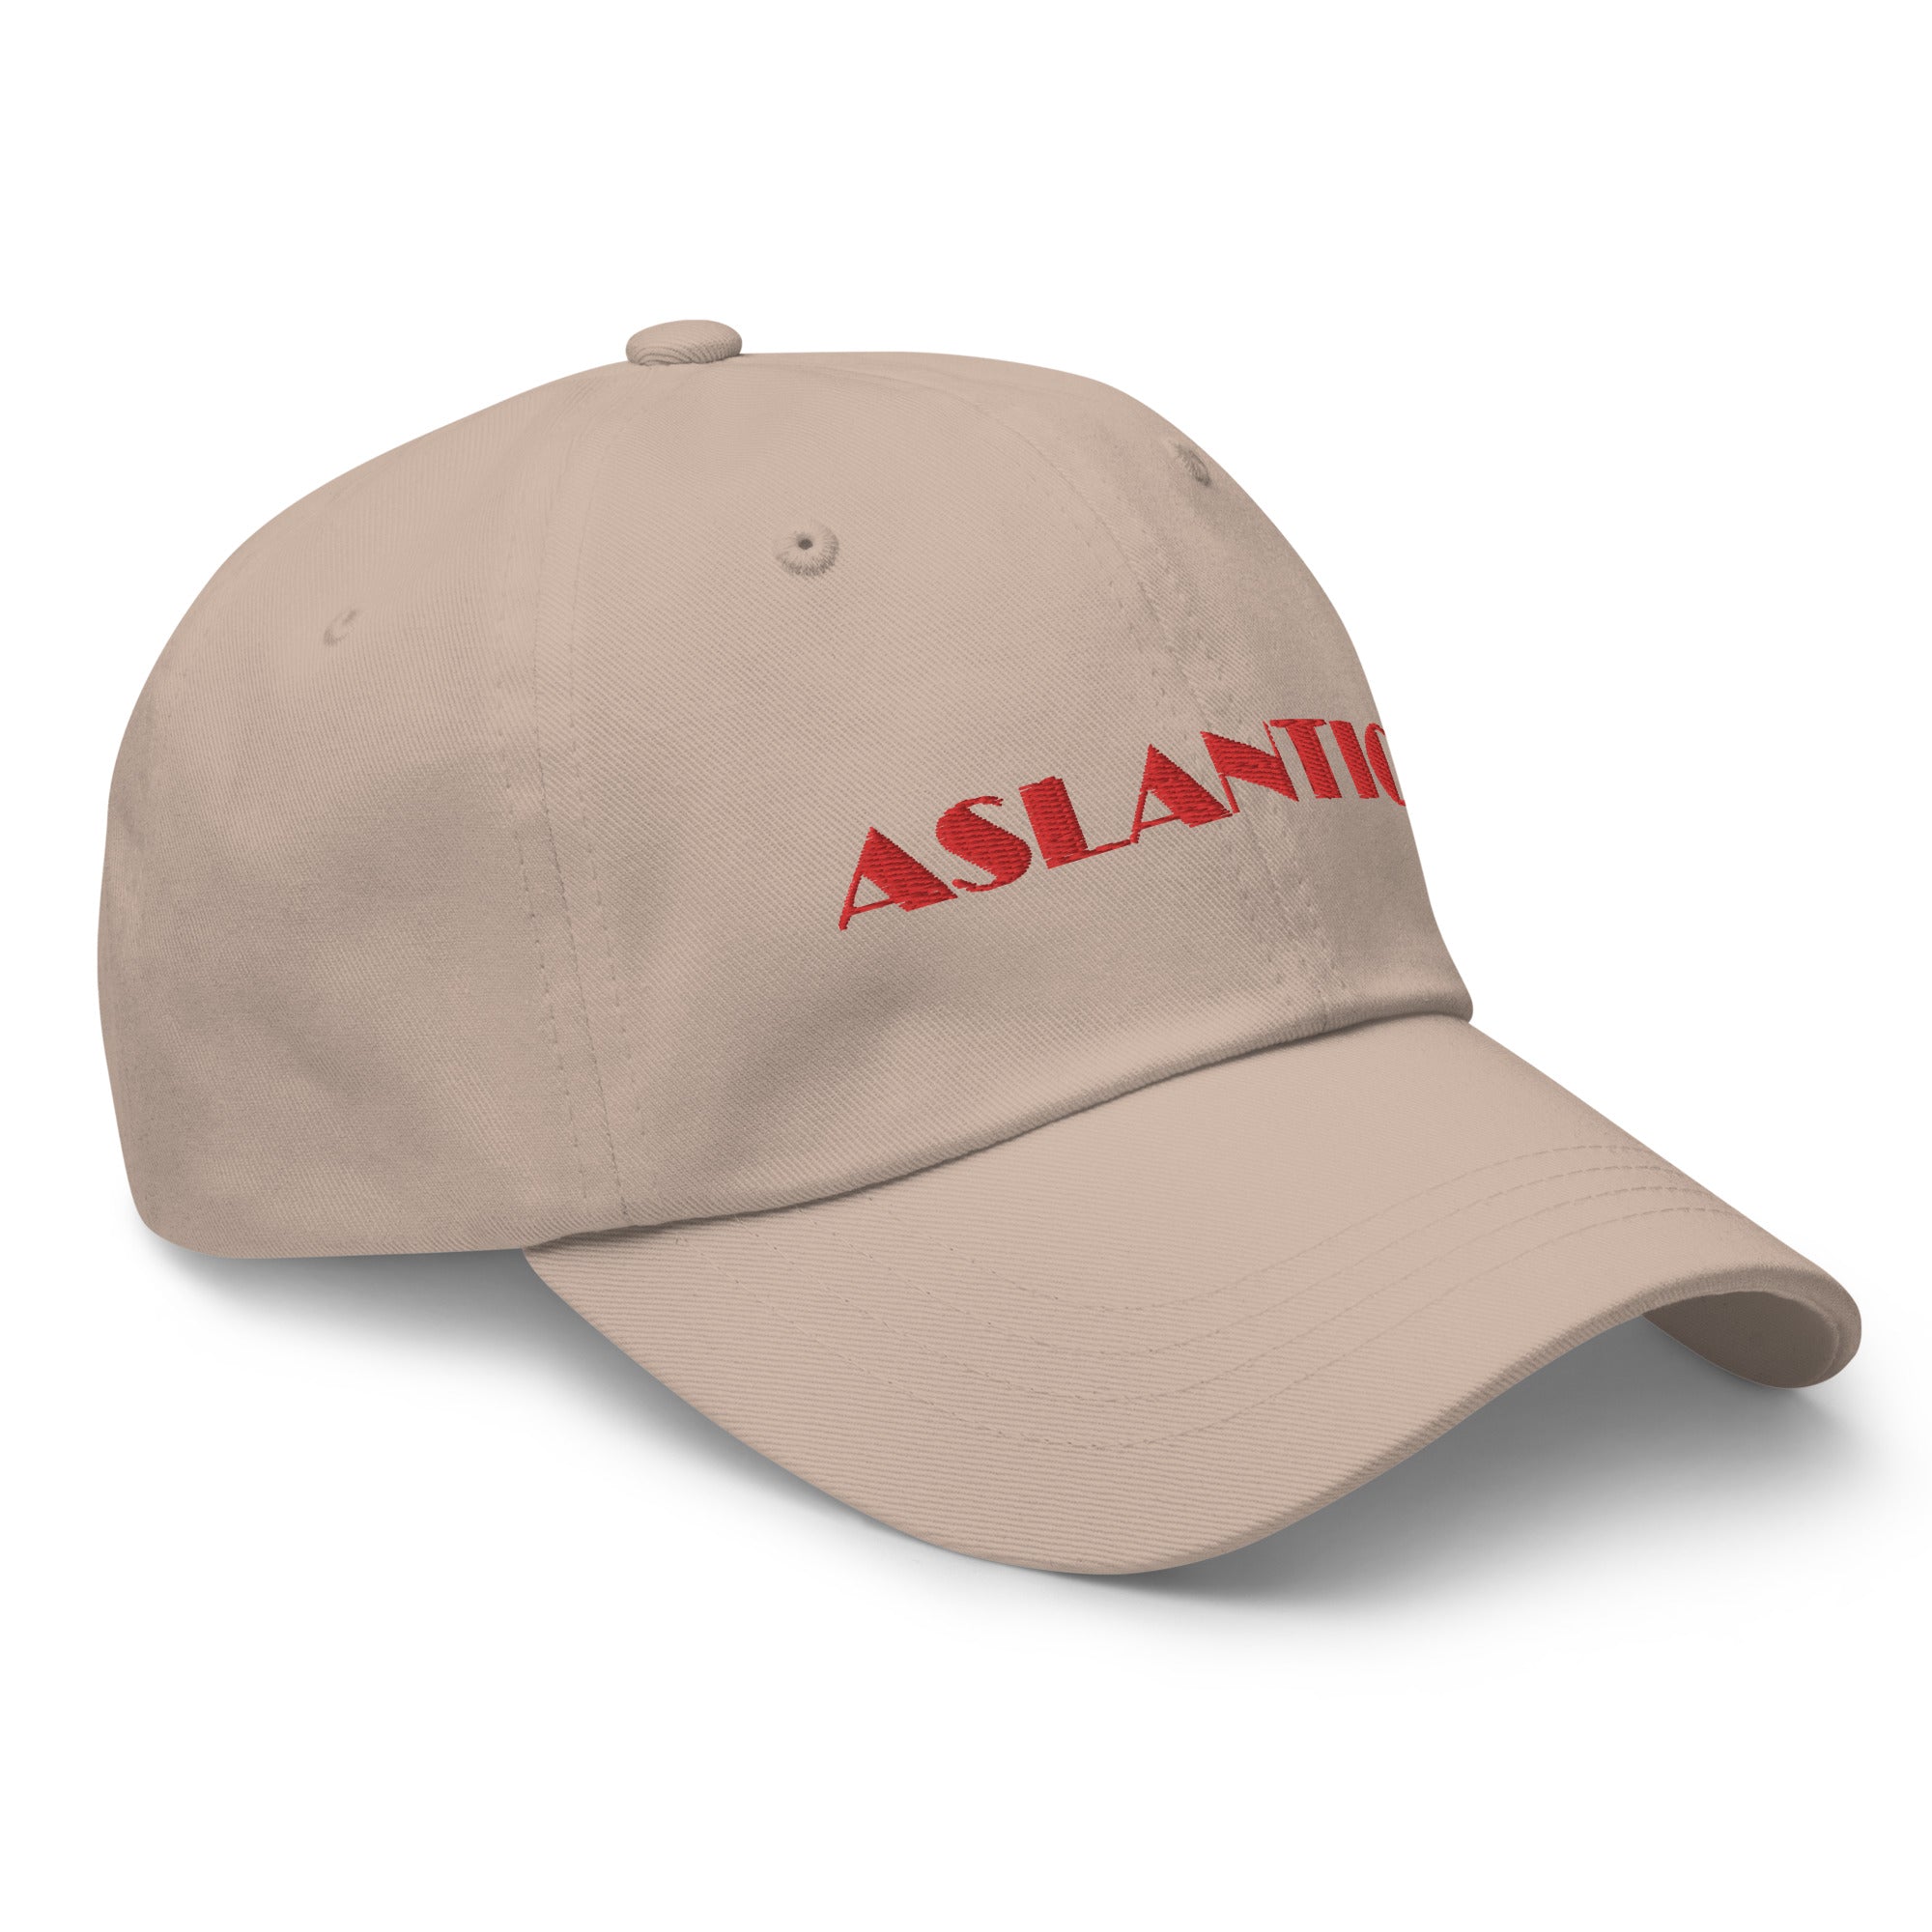 Aslantics Cap